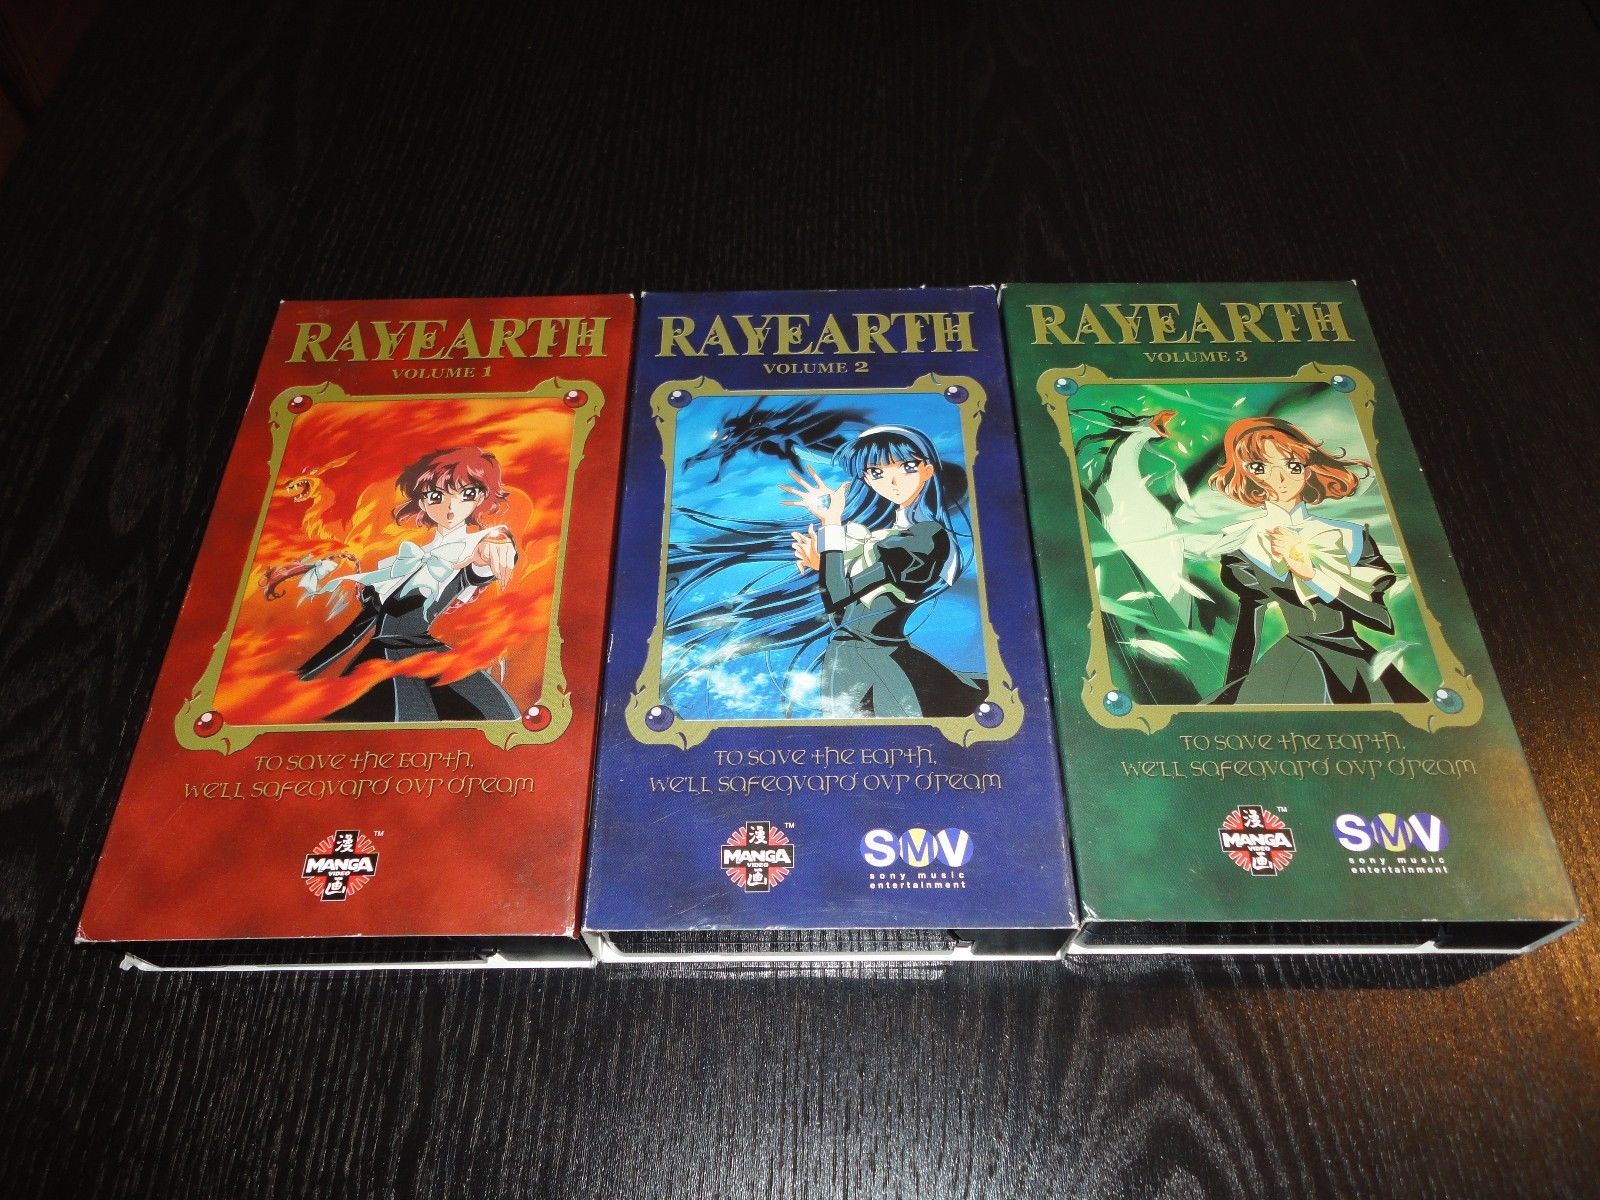 Personaggi di Magic Knight Rayearth - Wikipedia